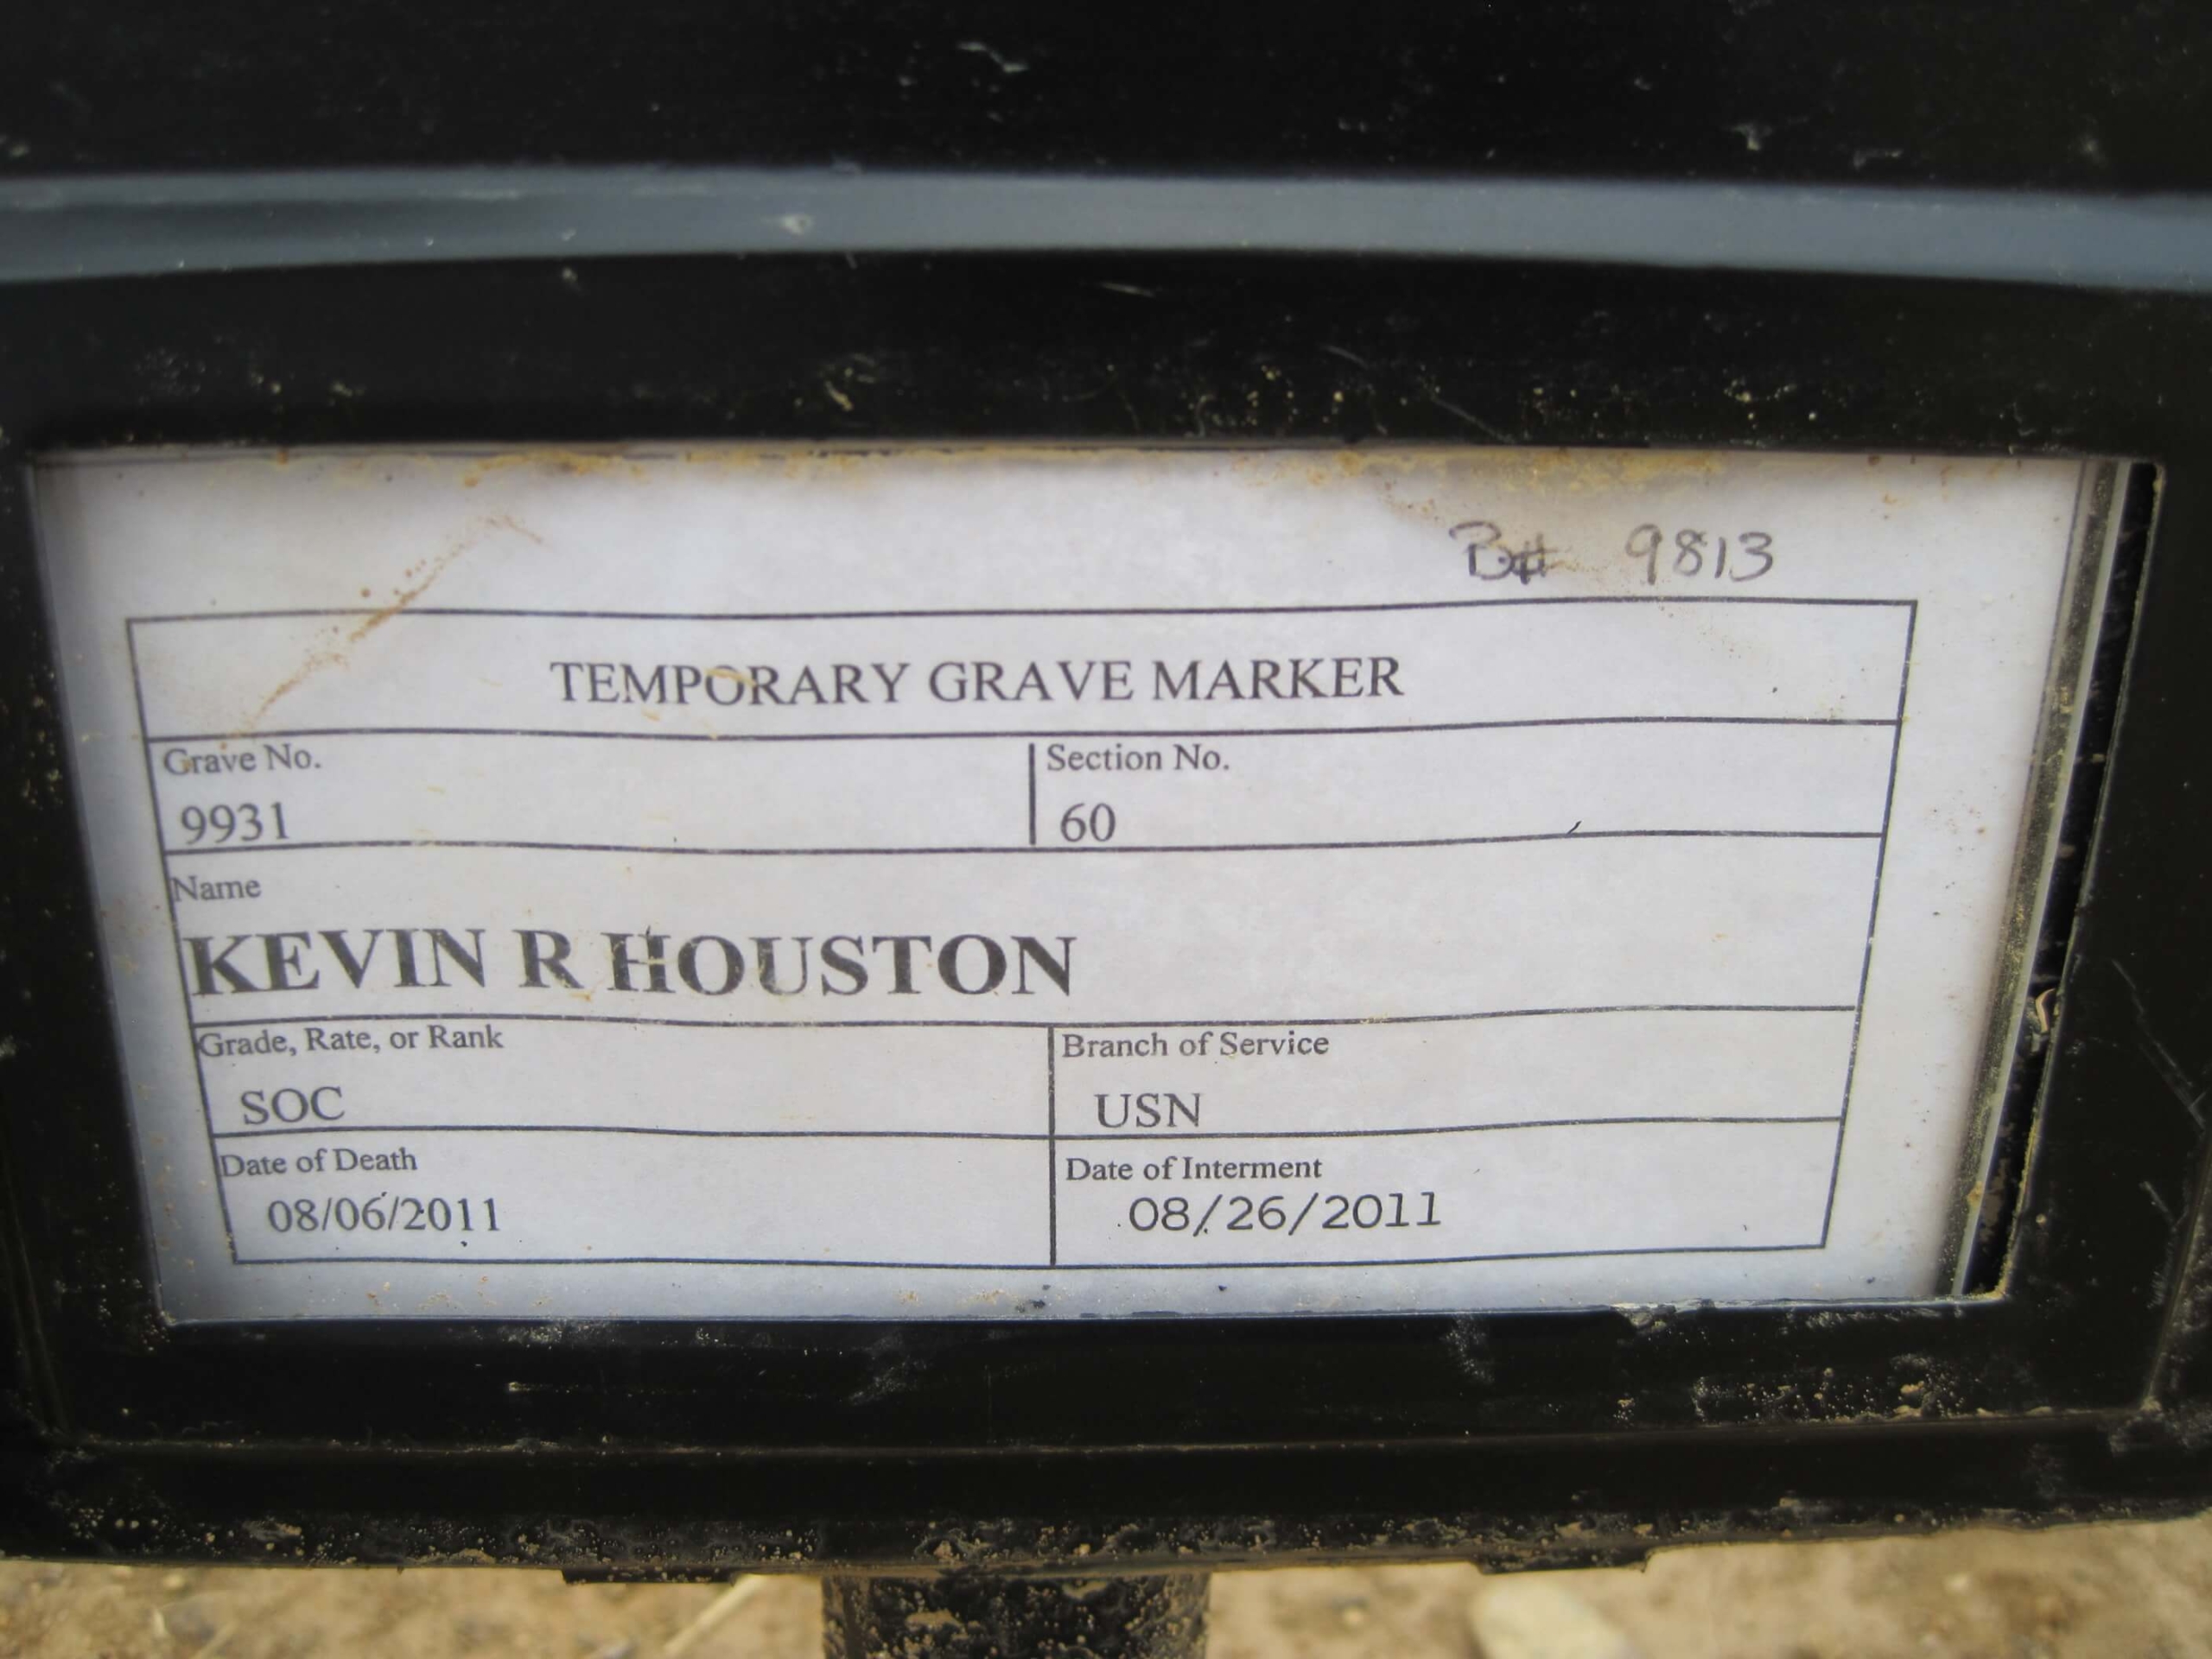 krhouston-gravesite-photo-by-eileen-horan-september-2011-001